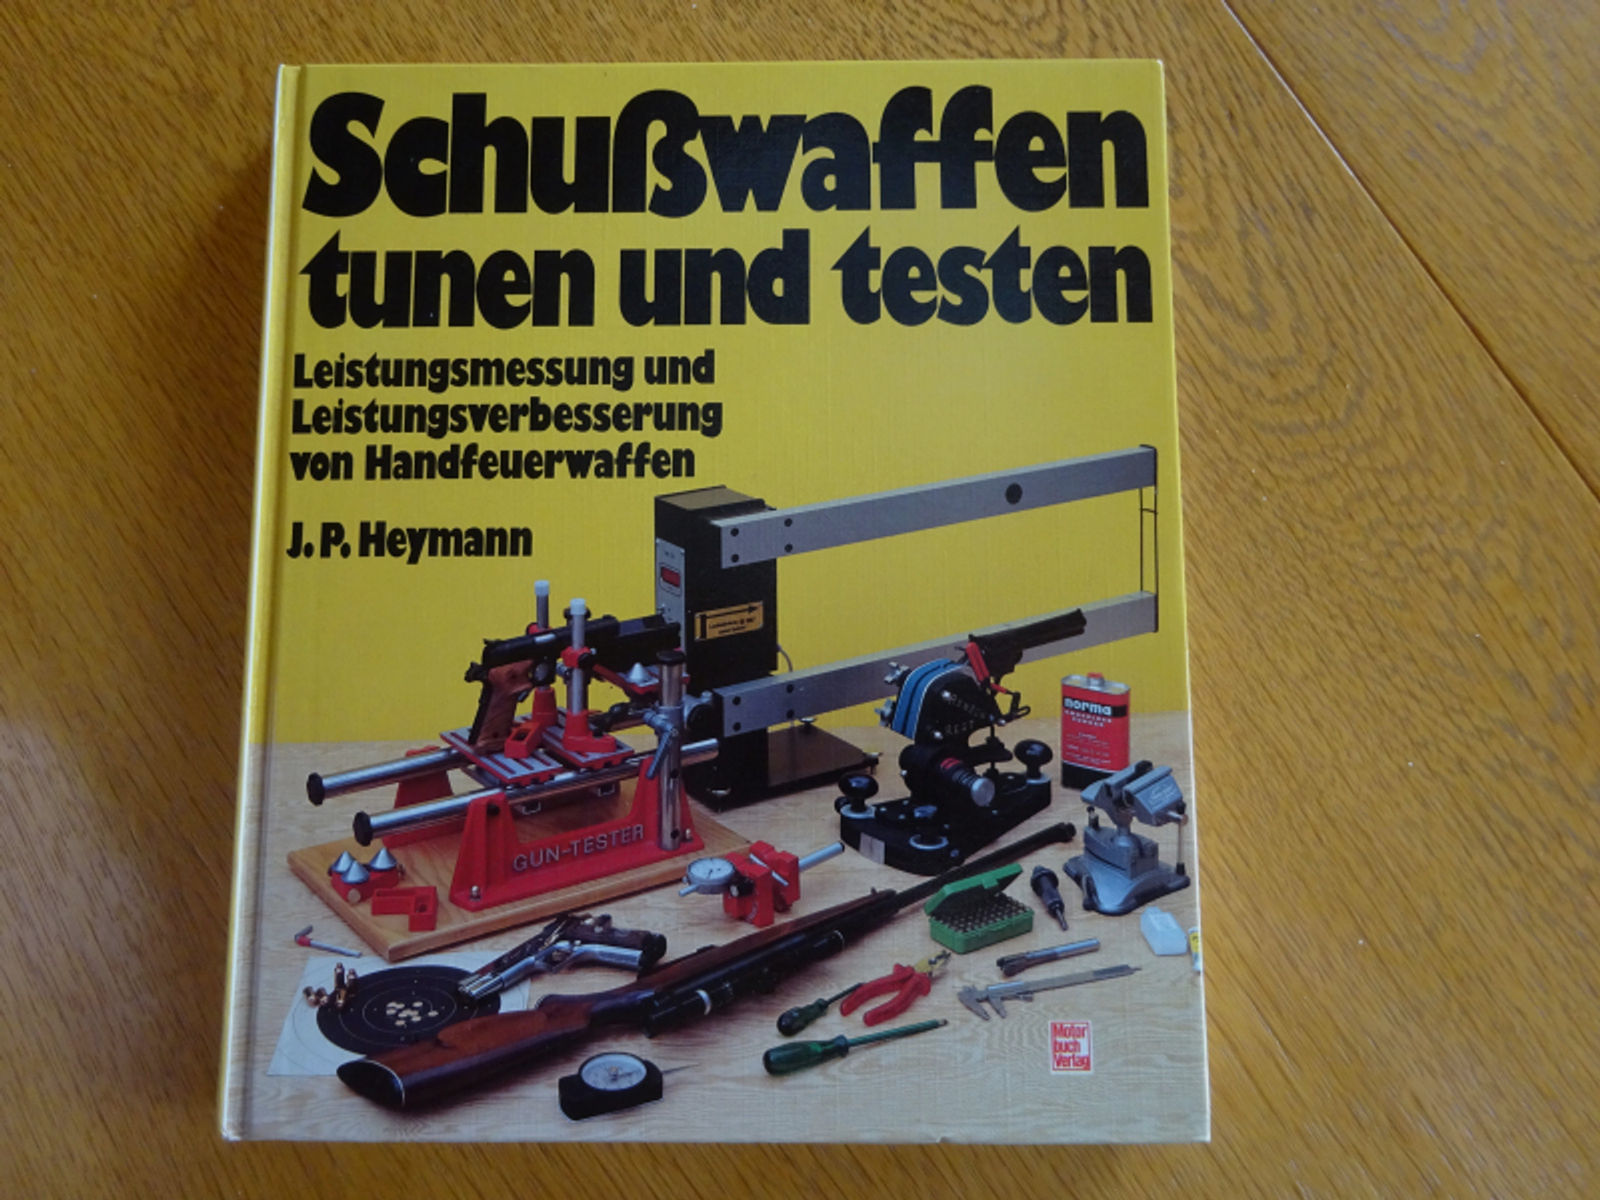 Schußwaffen tunen und testen von J.P Heymann